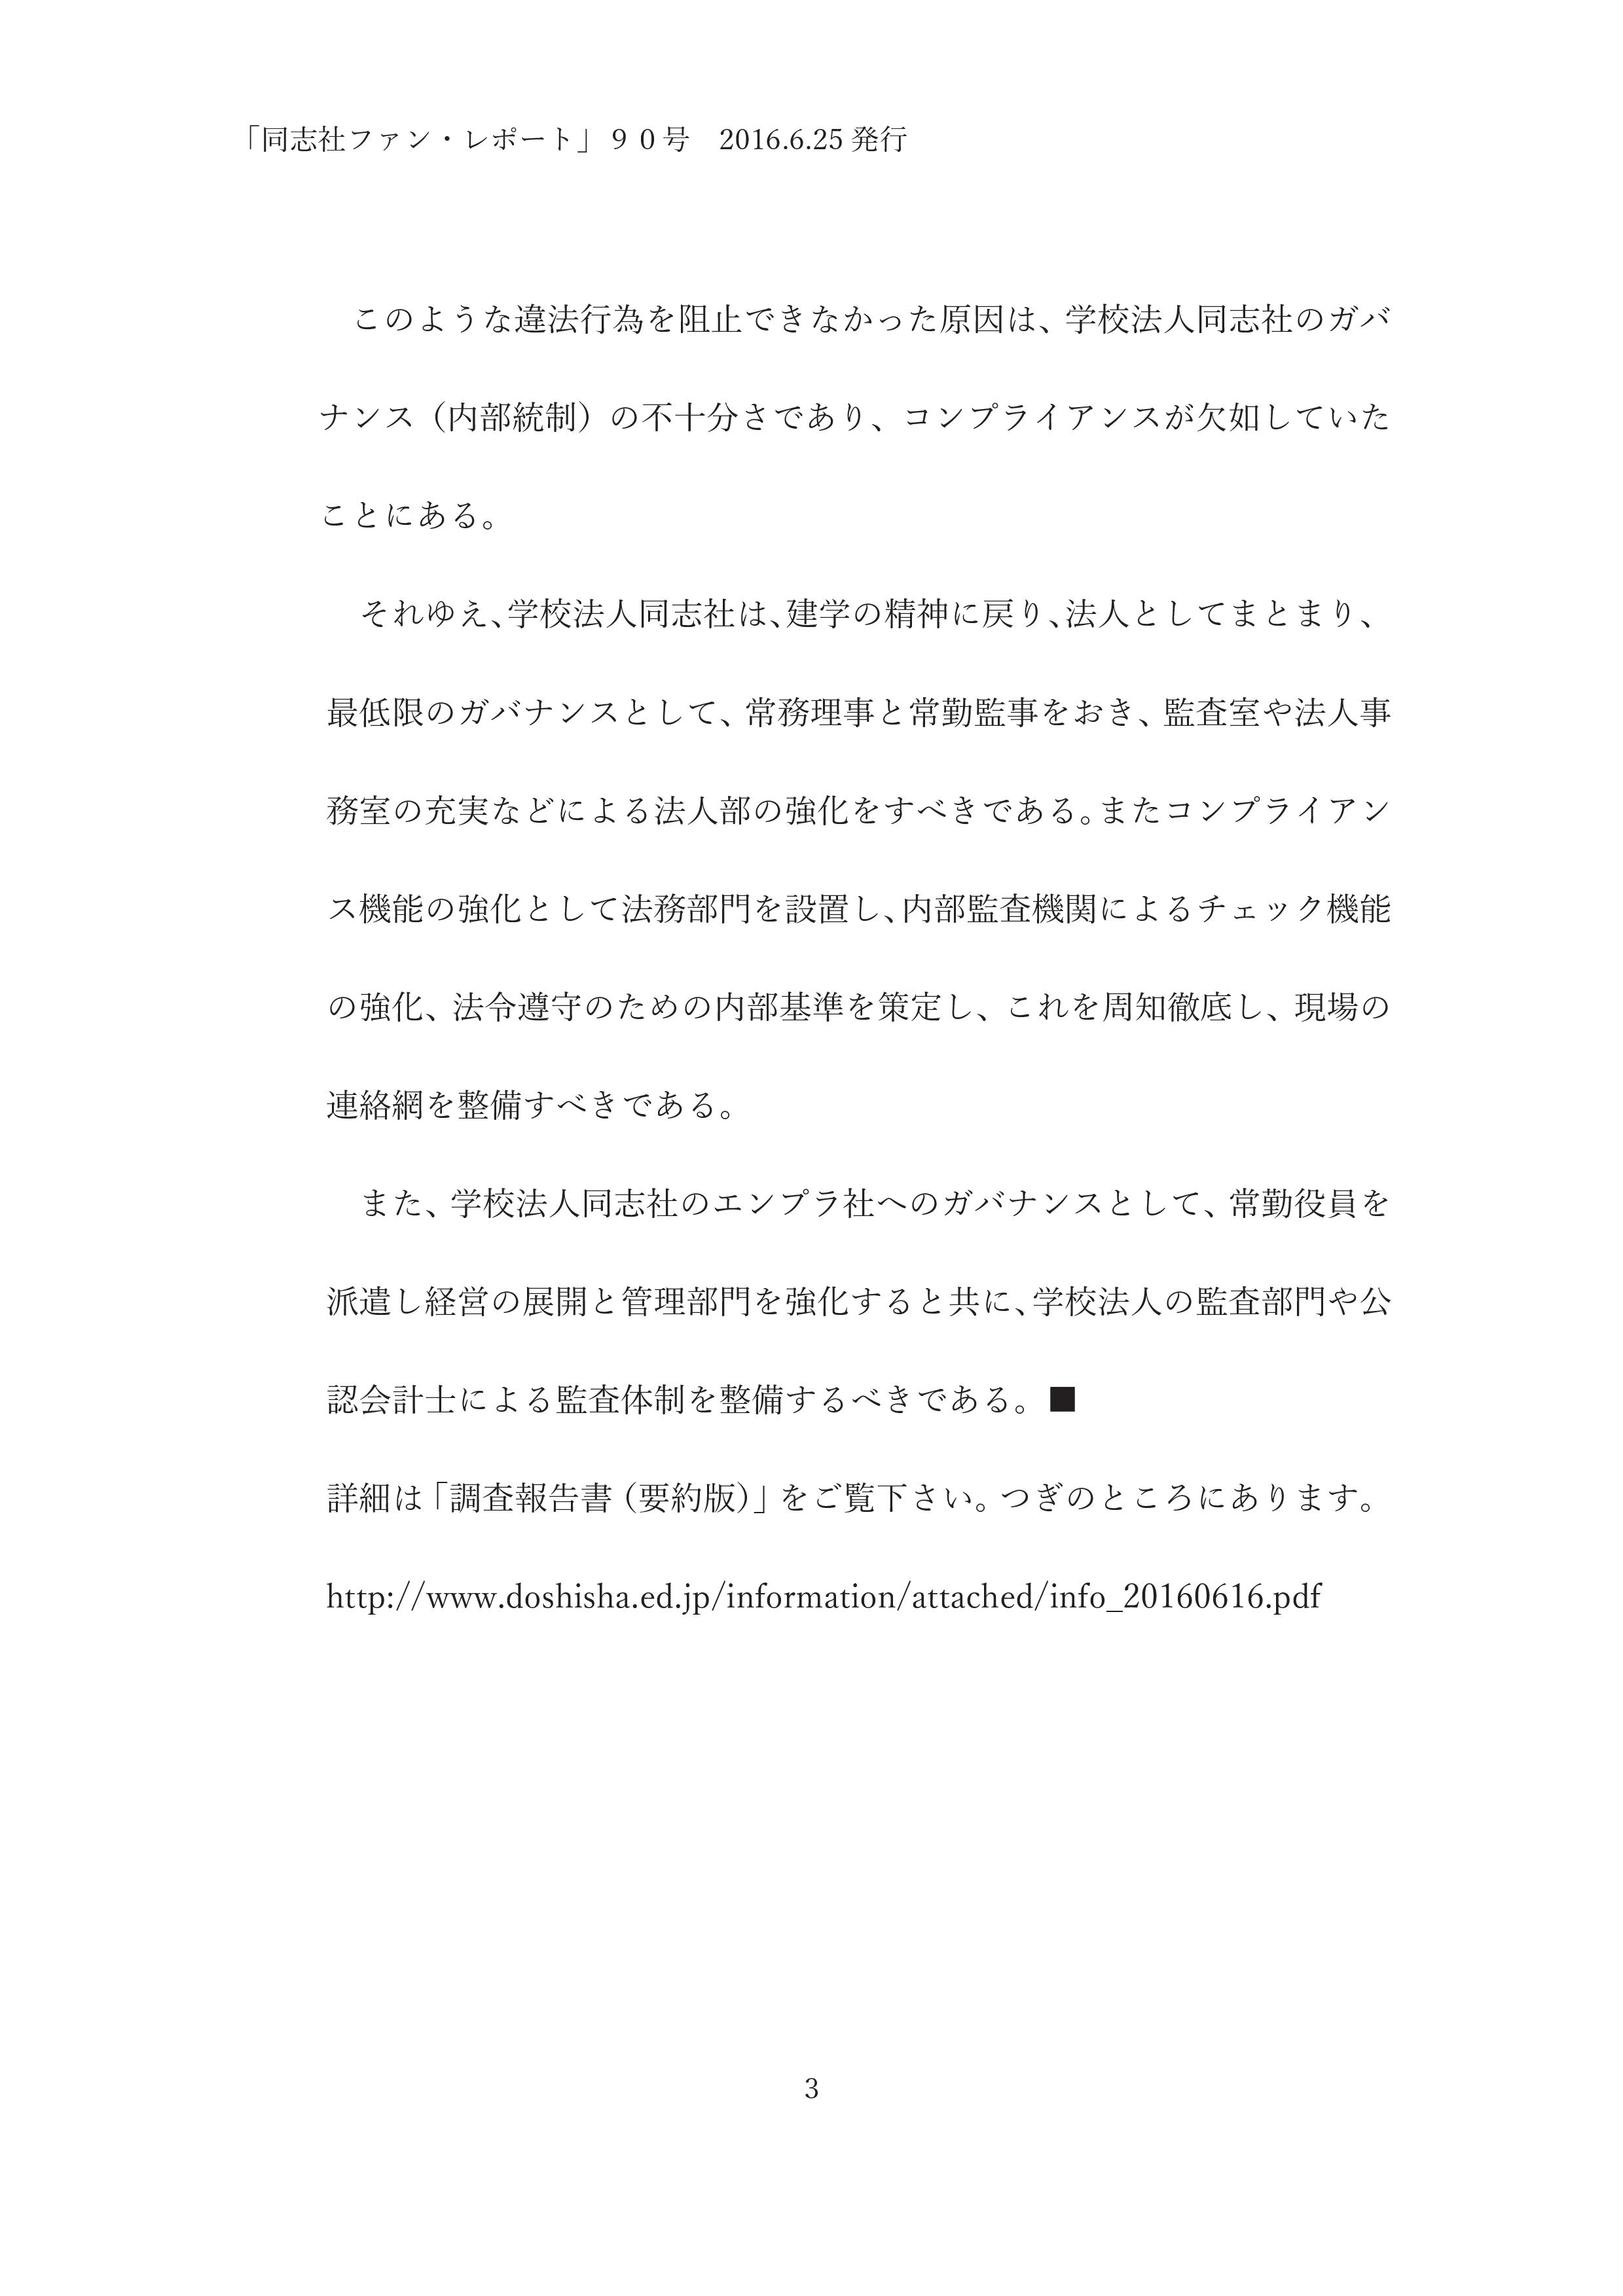 ９０．不祥事のお詫びと第三者調査委員会の報告・-003.jpg